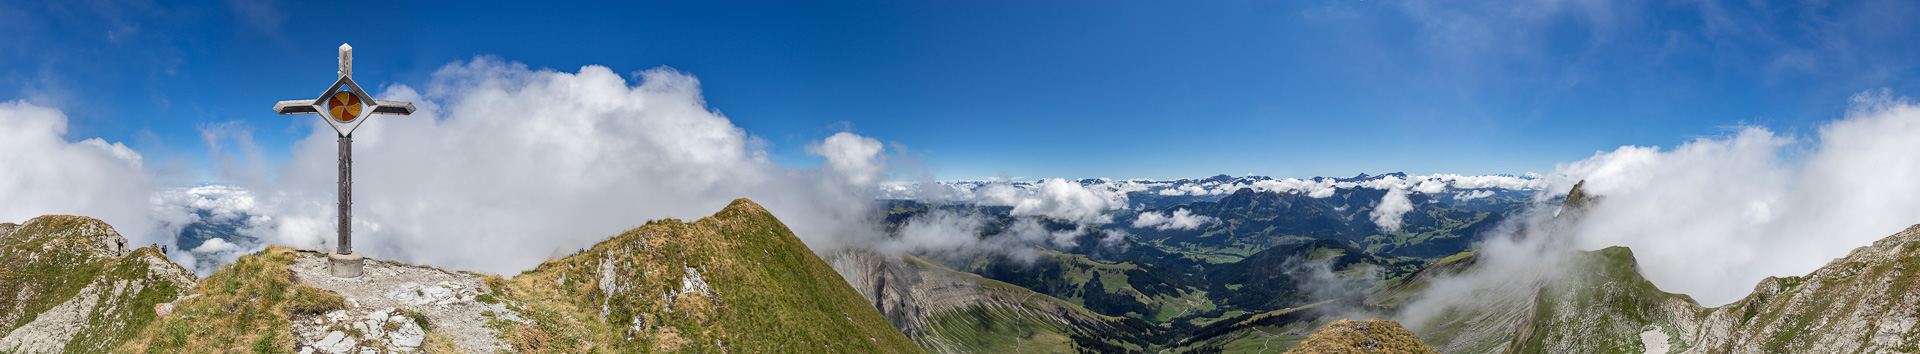 Spannendes Panorama mit ungewohnter Perspektive auf die Berner und die Walliser Alpen.